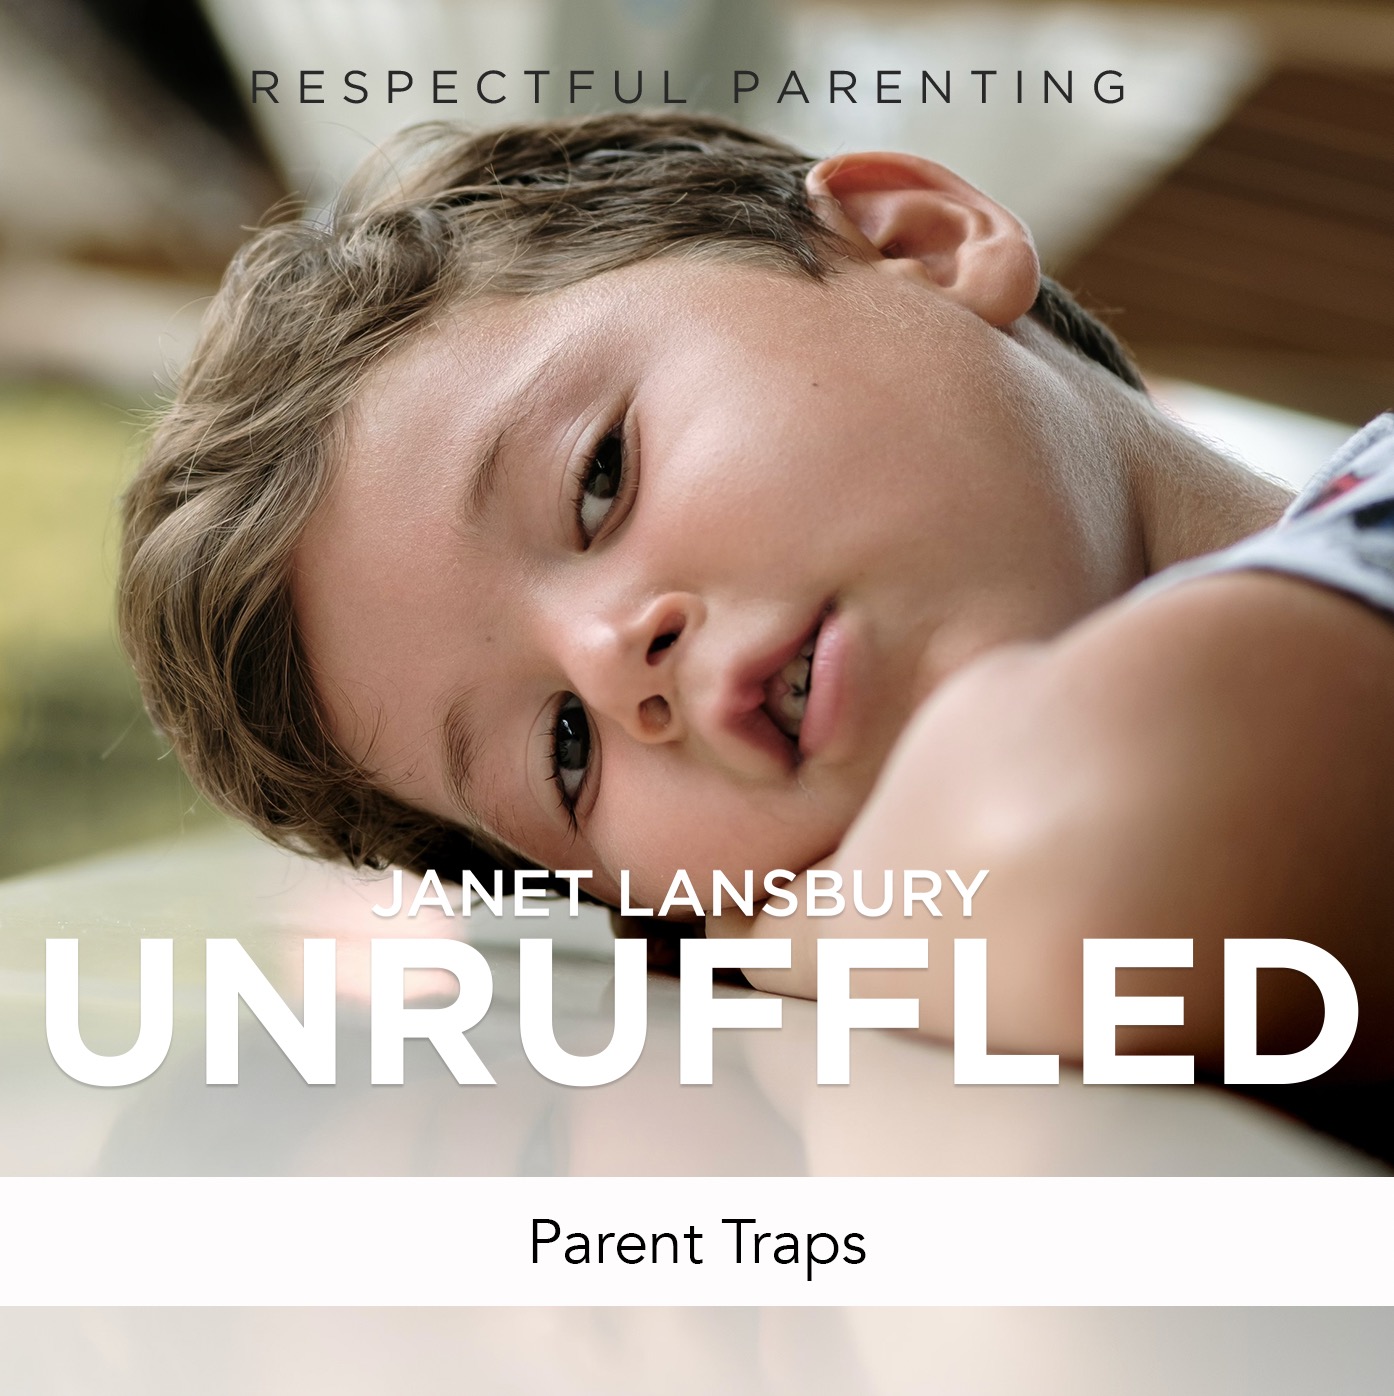 Parent Traps – Janet Lansbury